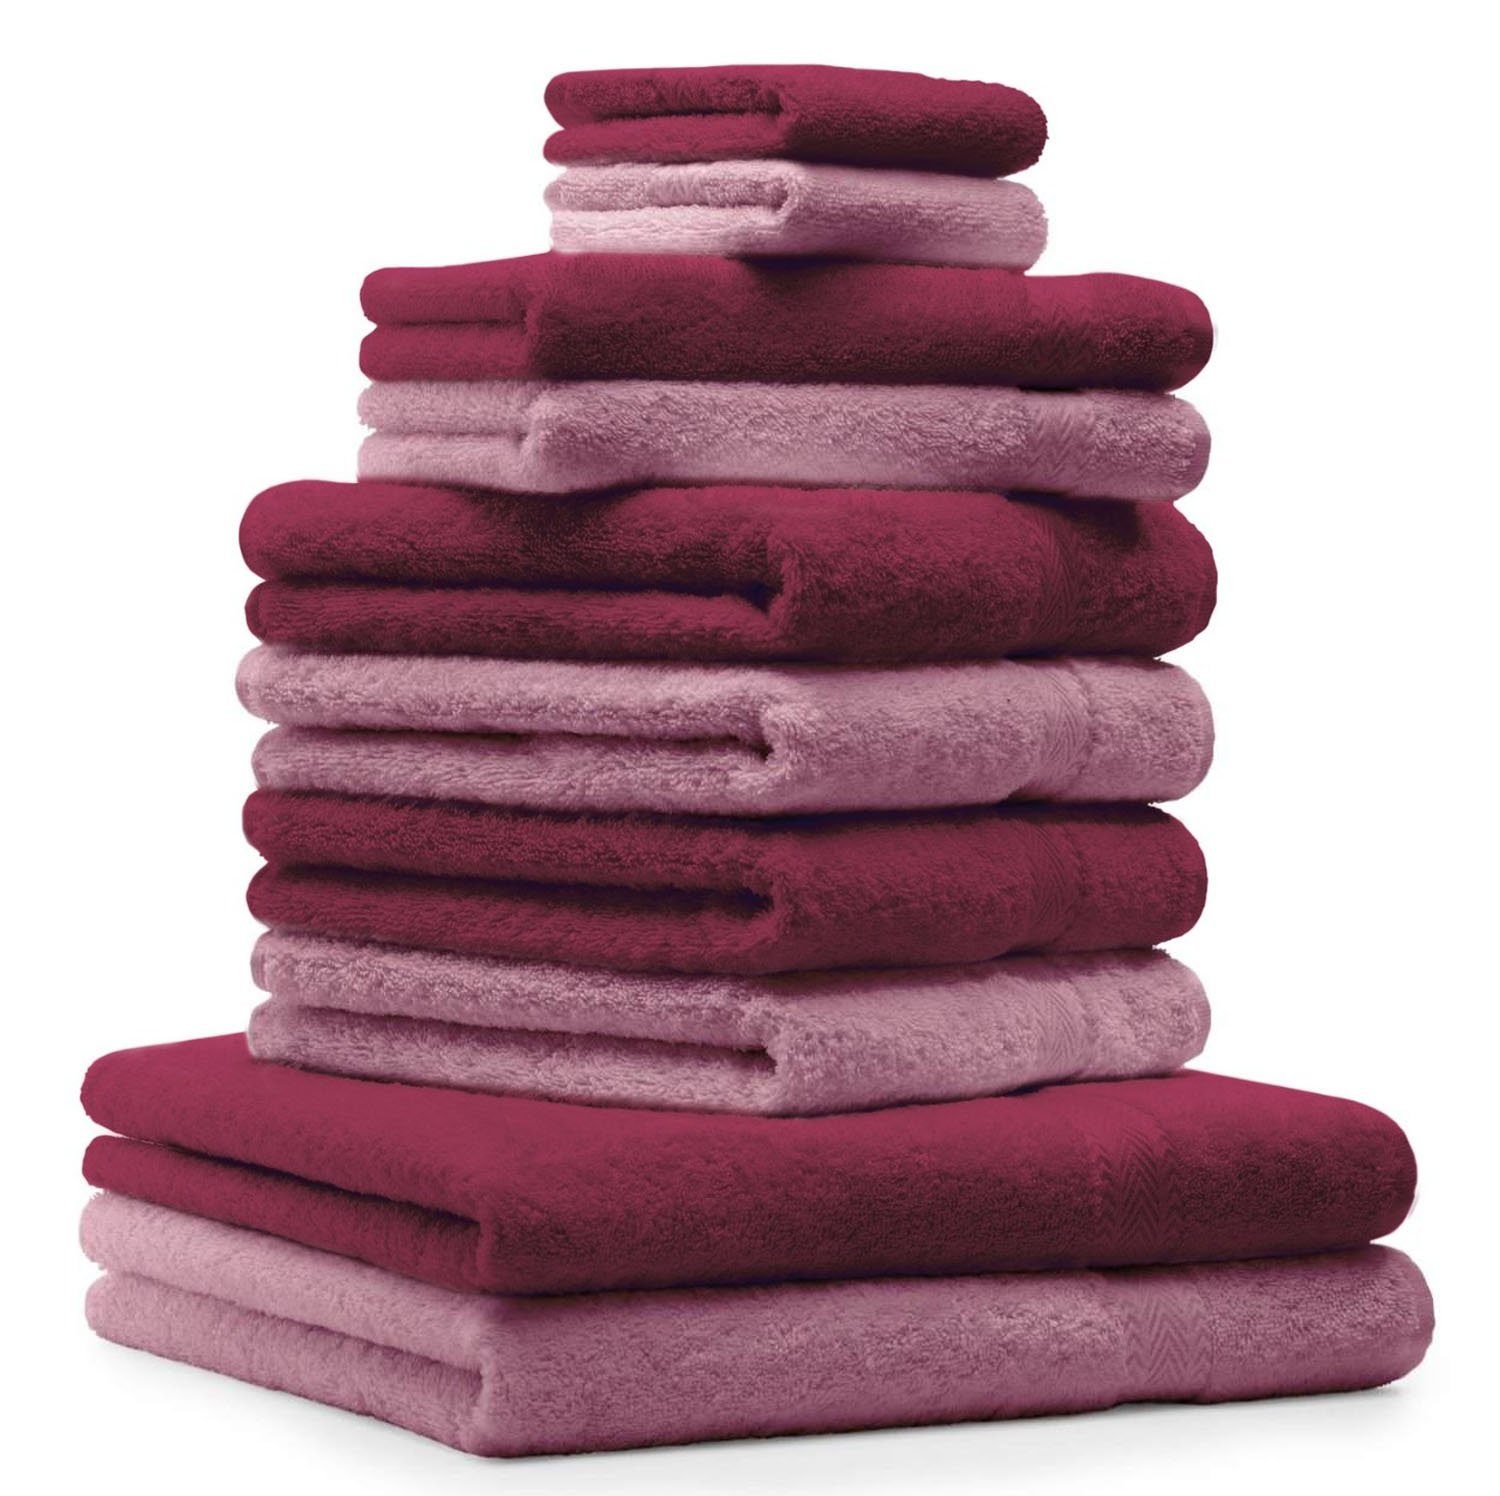 Betz Handtuch Set 10-TLG. Handtuch-Set Premium Farbe Altrosa & Dunkelrot, 100% Baumwolle, (10-tlg)